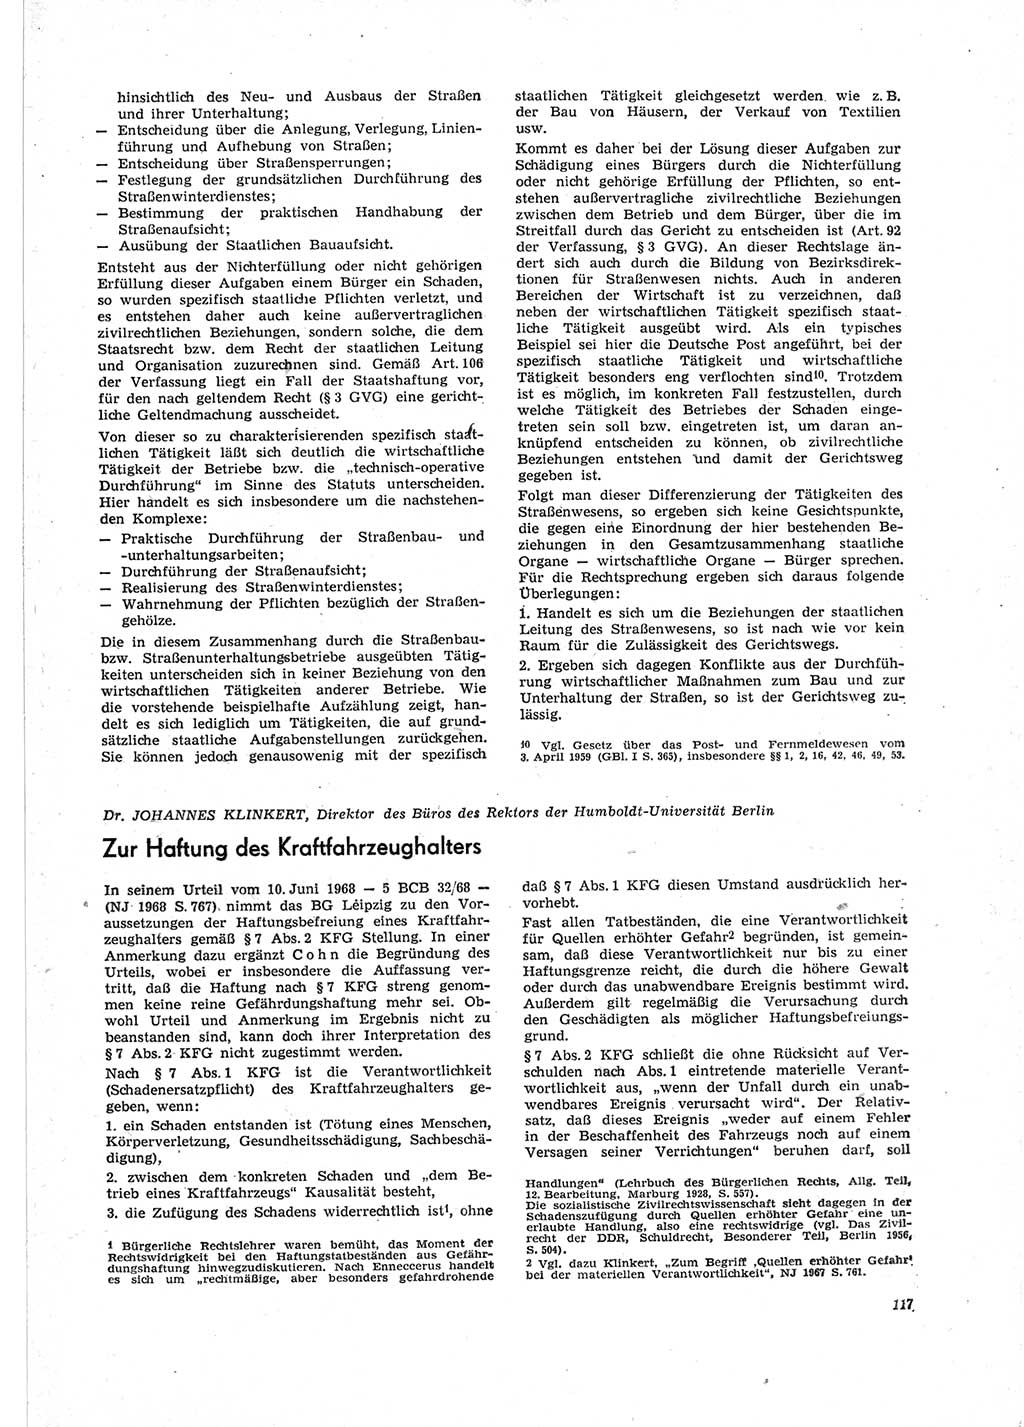 Neue Justiz (NJ), Zeitschrift für Recht und Rechtswissenschaft [Deutsche Demokratische Republik (DDR)], 23. Jahrgang 1969, Seite 117 (NJ DDR 1969, S. 117)